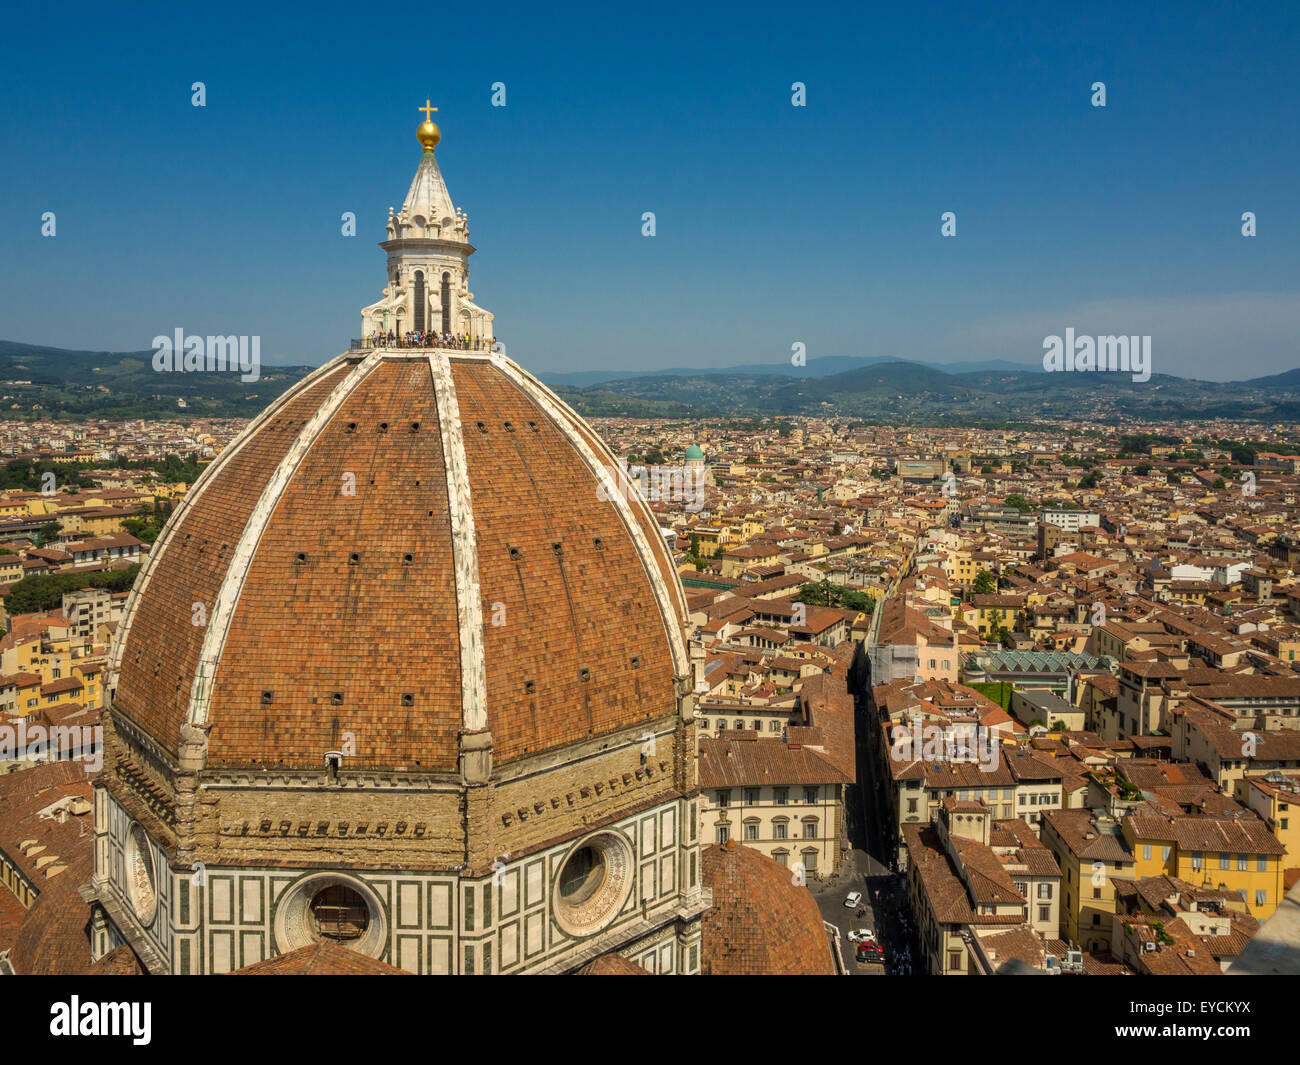 Die Kathedrale von Florenz oder die Kuppel des Doms wurden von Filippo Brunelleschi entworfen. Florenz, Italien. Stockfoto